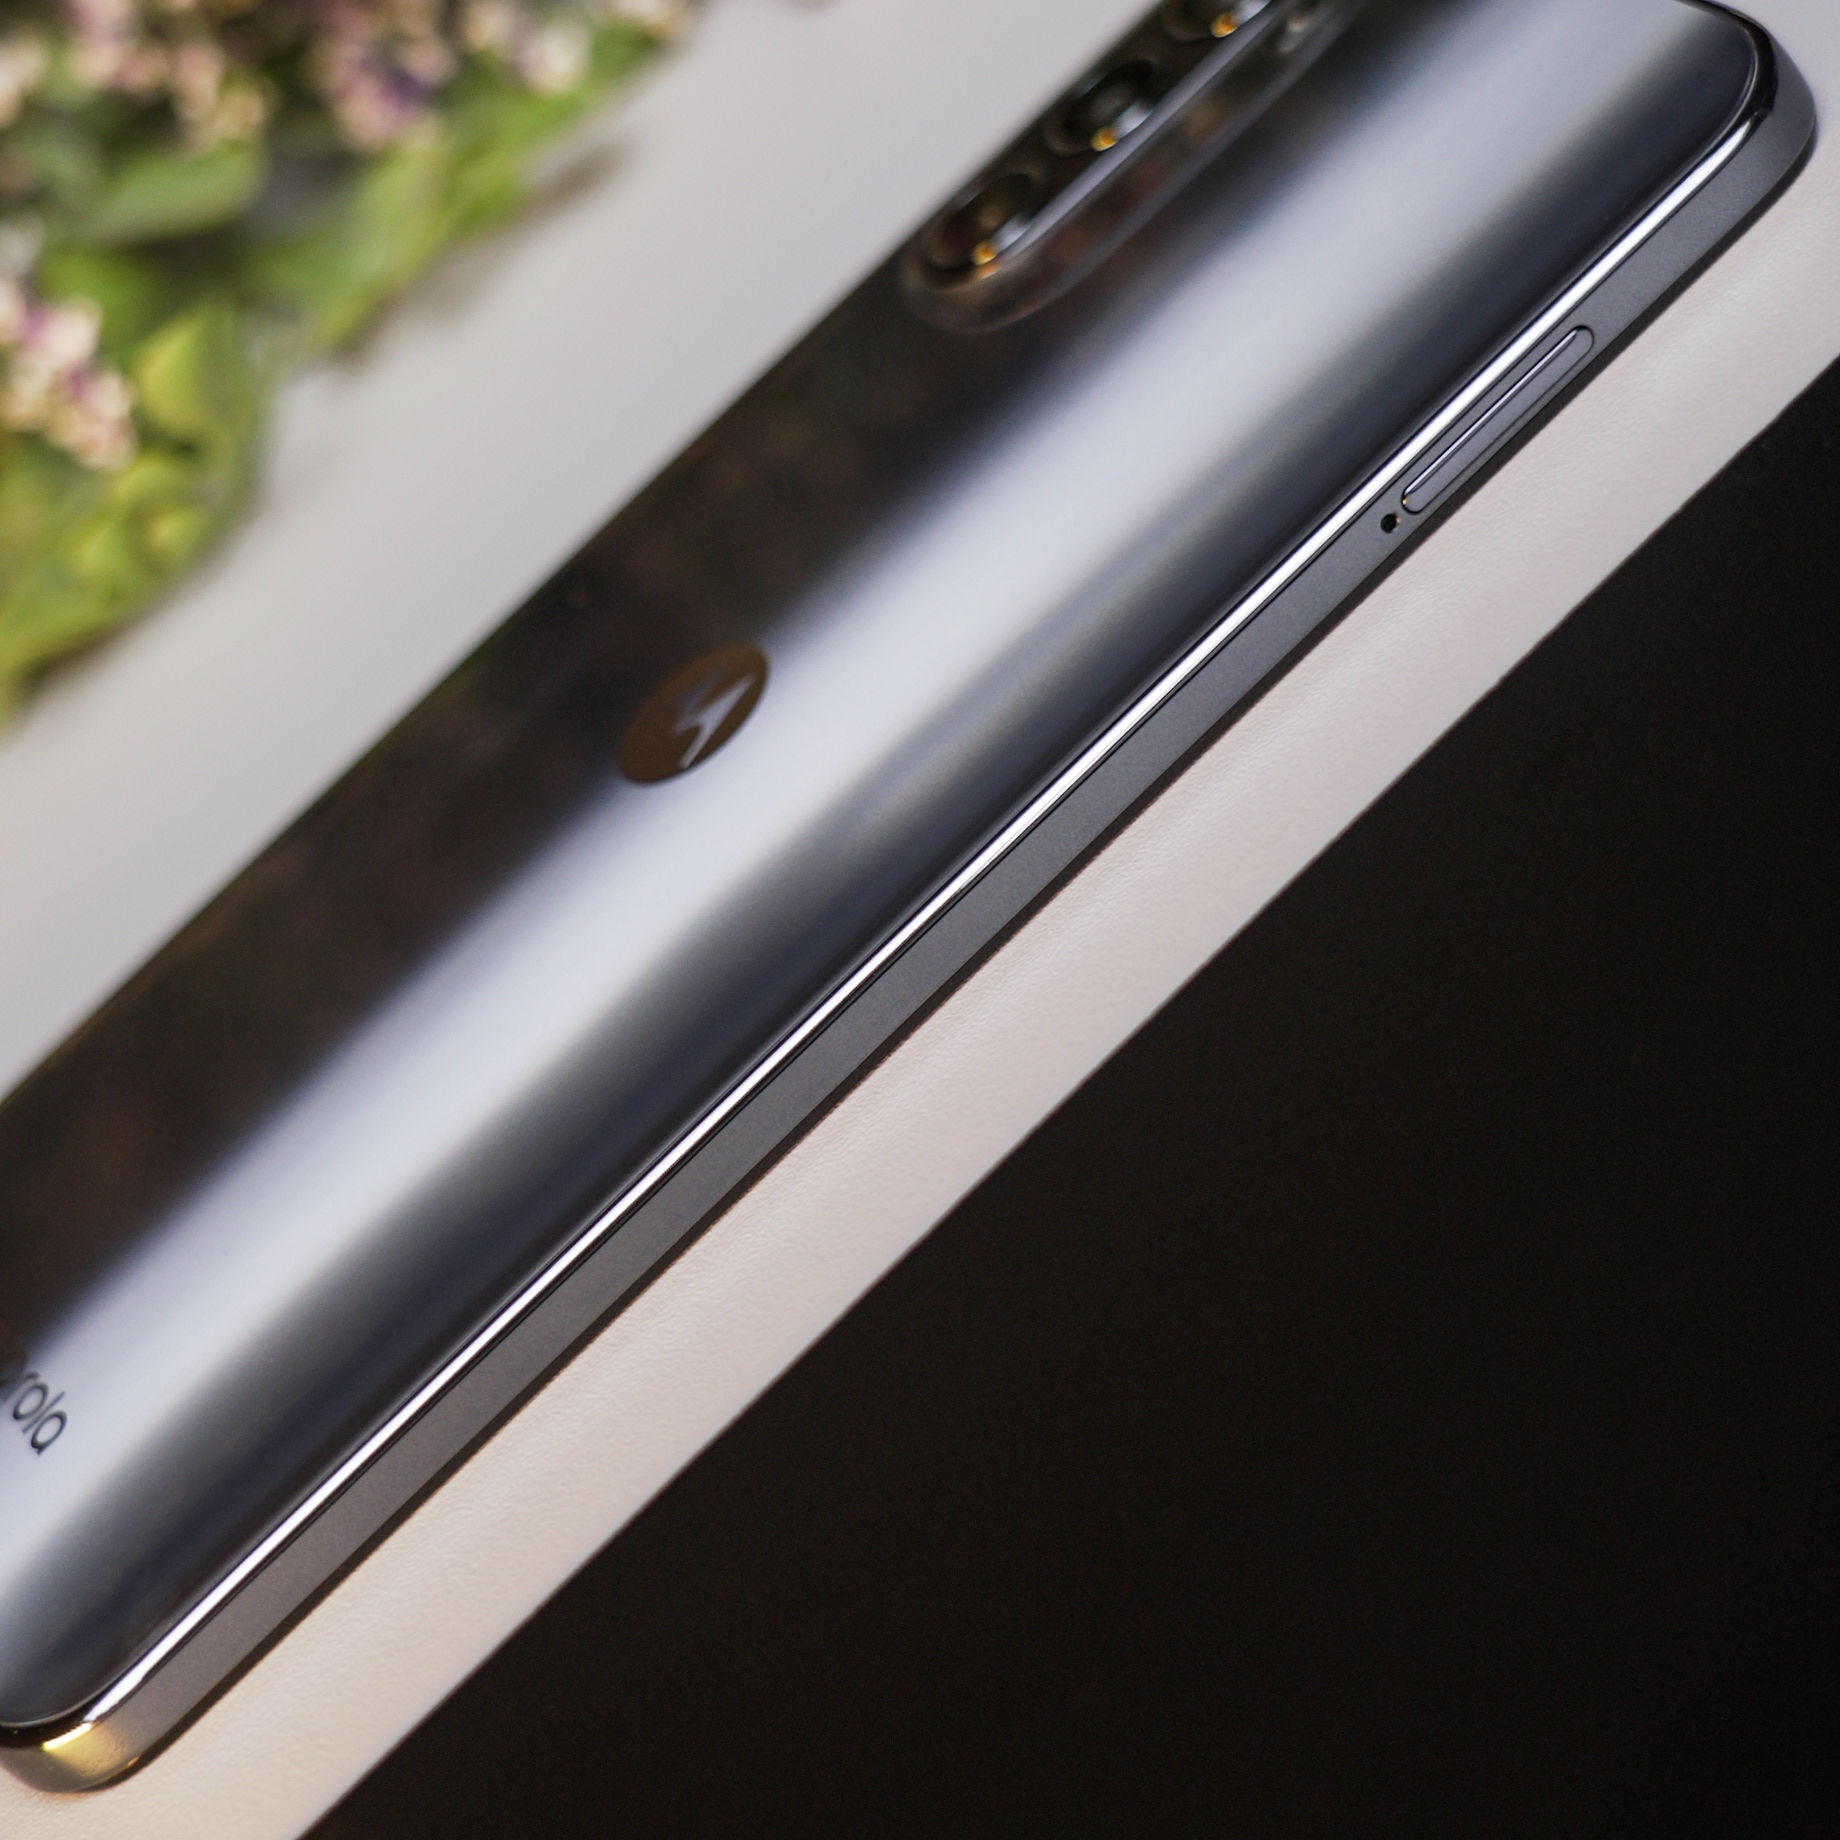 スマートフォン/携帯電話 スマートフォン本体 Upcoming Moto G52j 5G specifications revealed through Geekbench 